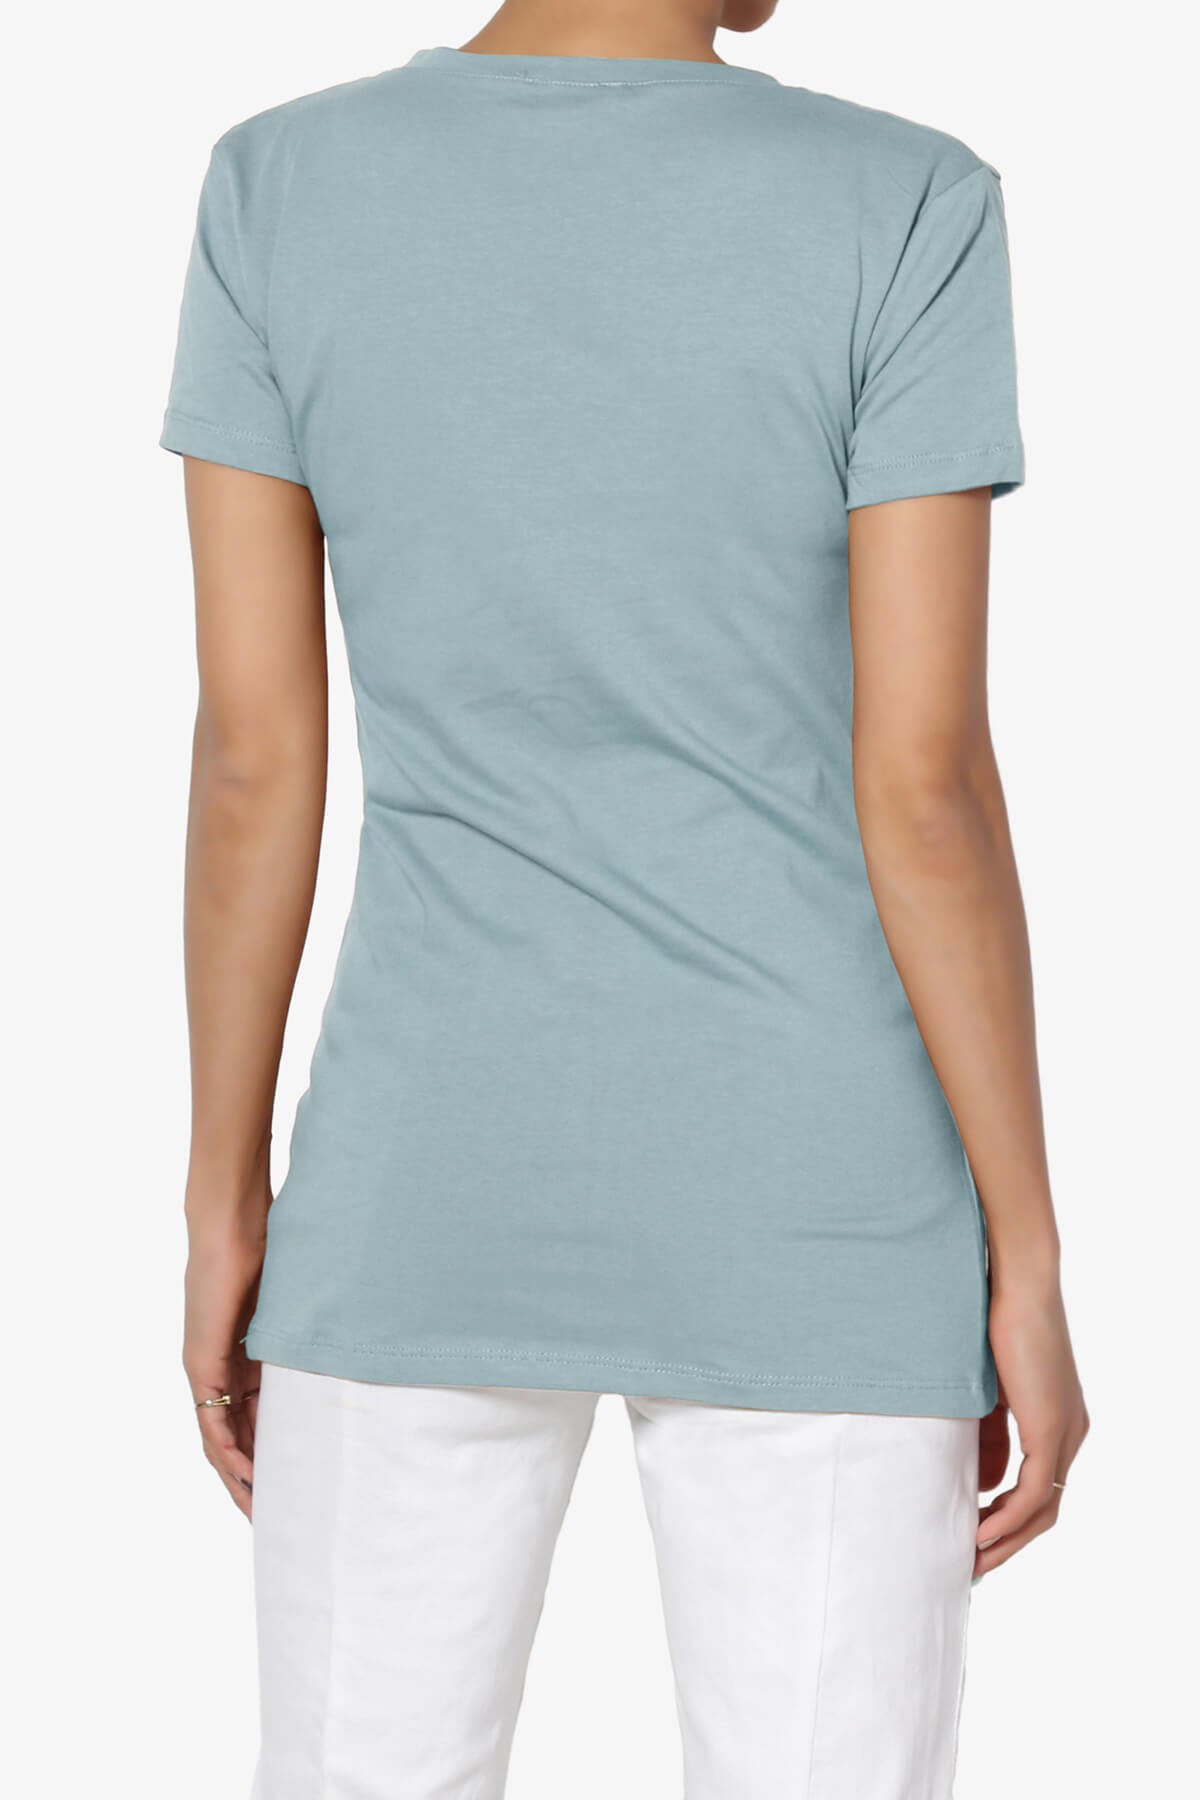 Candela V-Neck Short Sleeve T-Shirts DUSTY BLUE_2